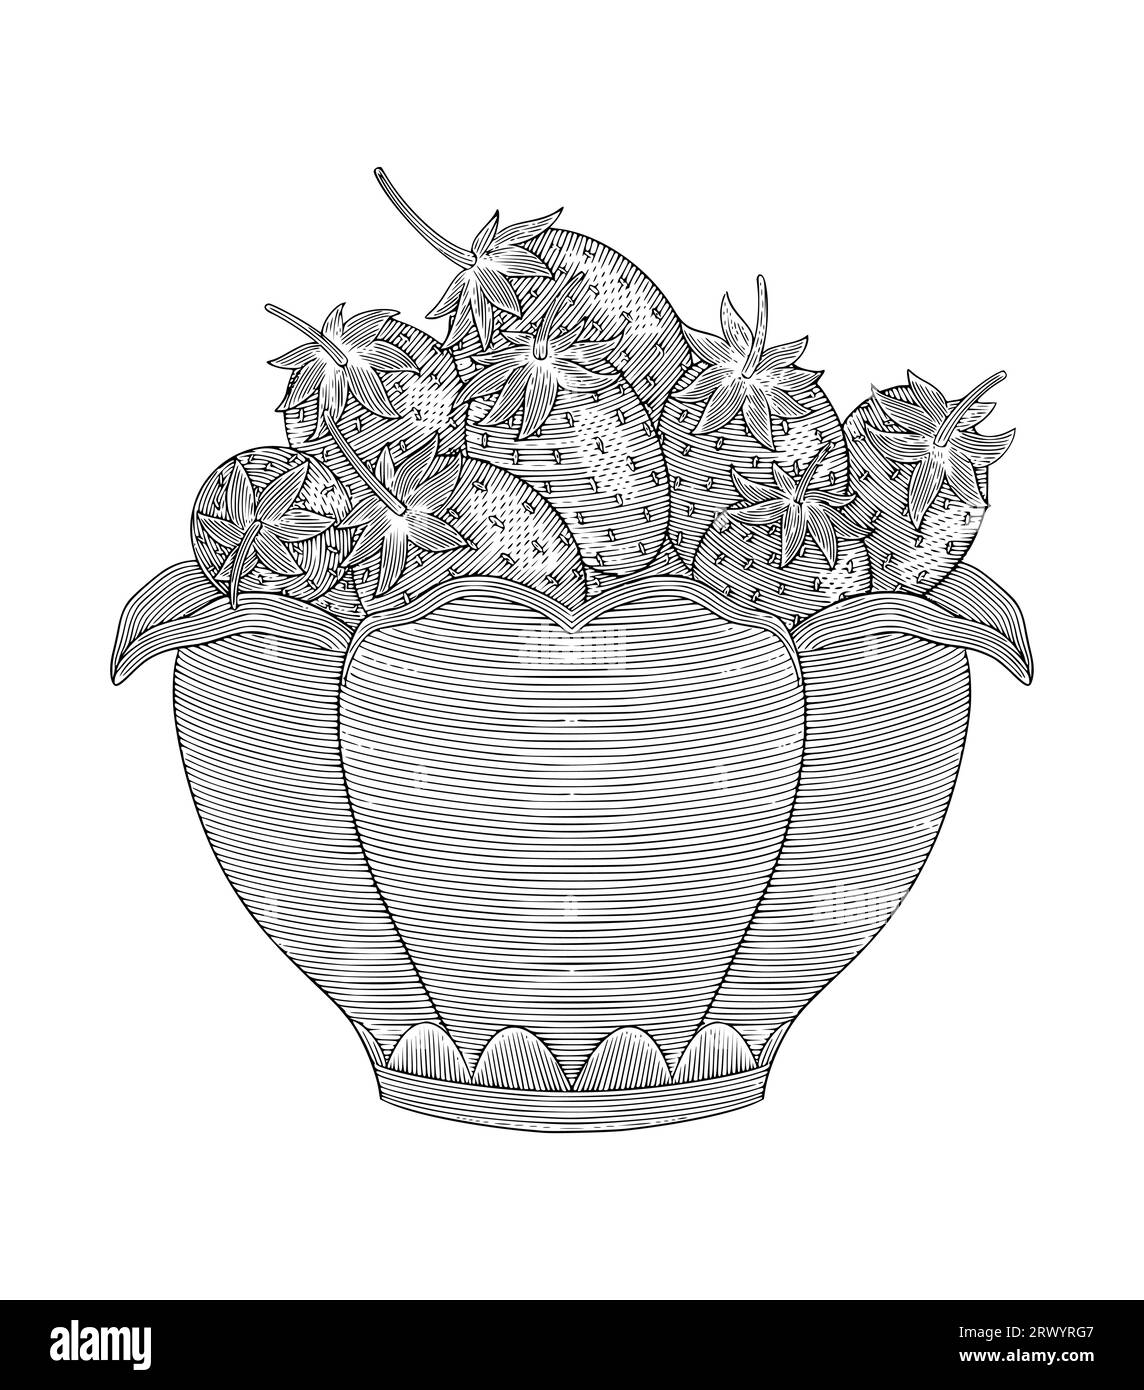 Fraise dans le vase, gravure vintage illustration vectorielle de style dessin Illustration de Vecteur